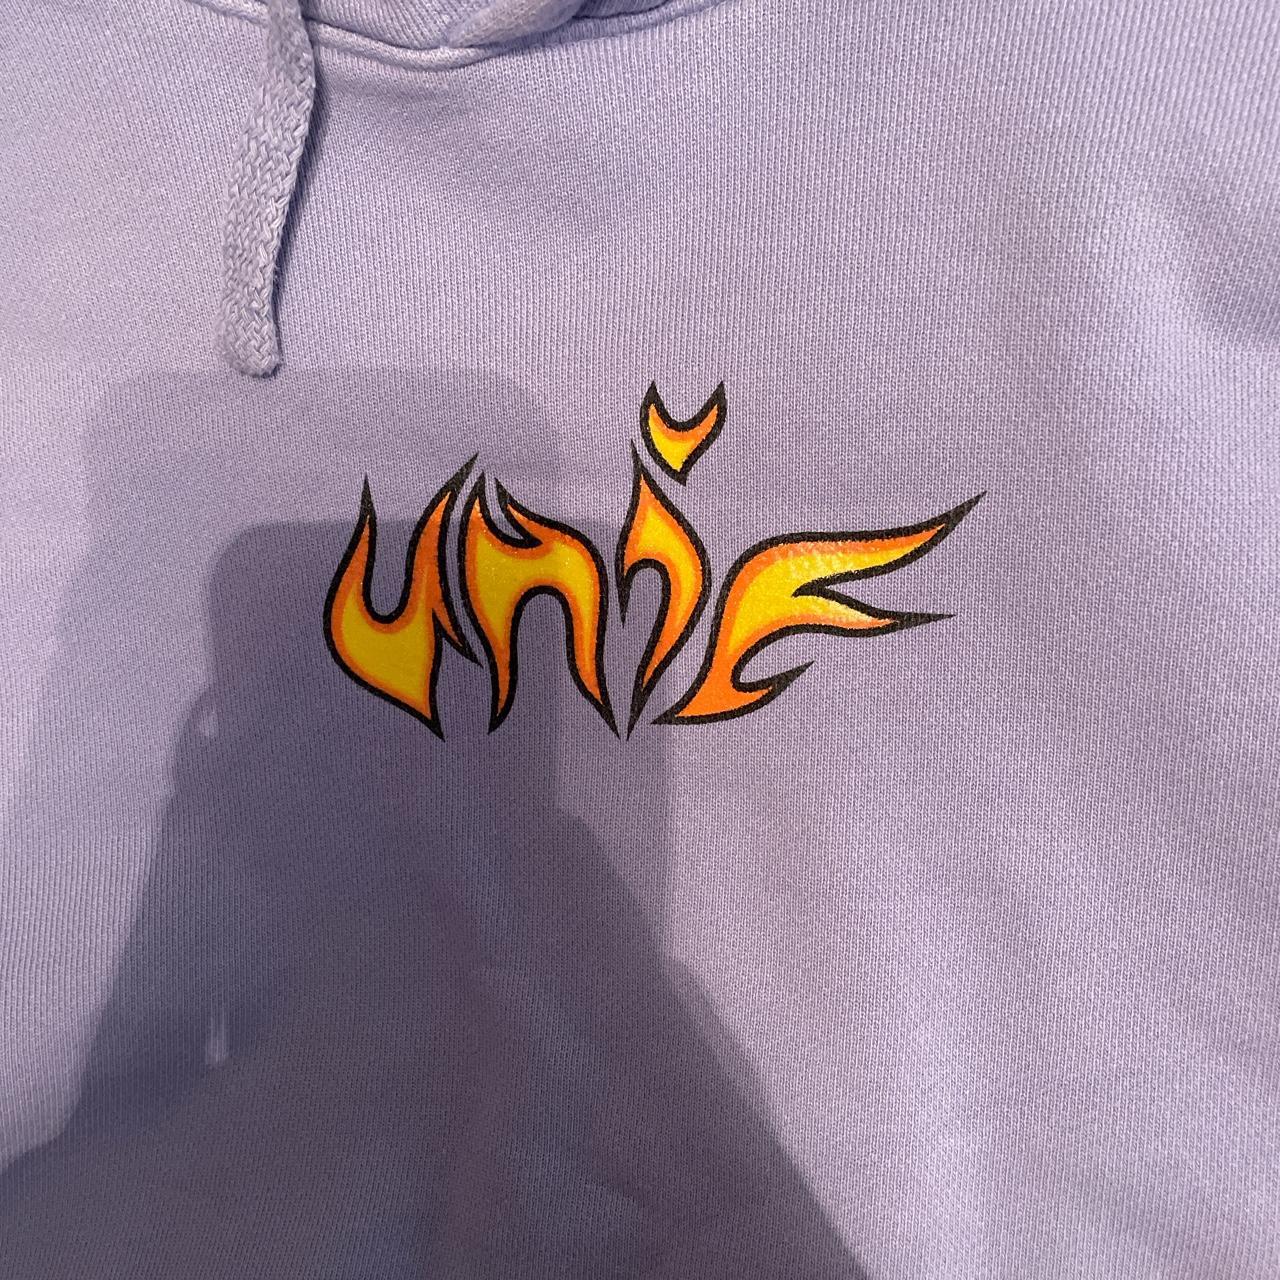 Unif flame-hoodie - Depop